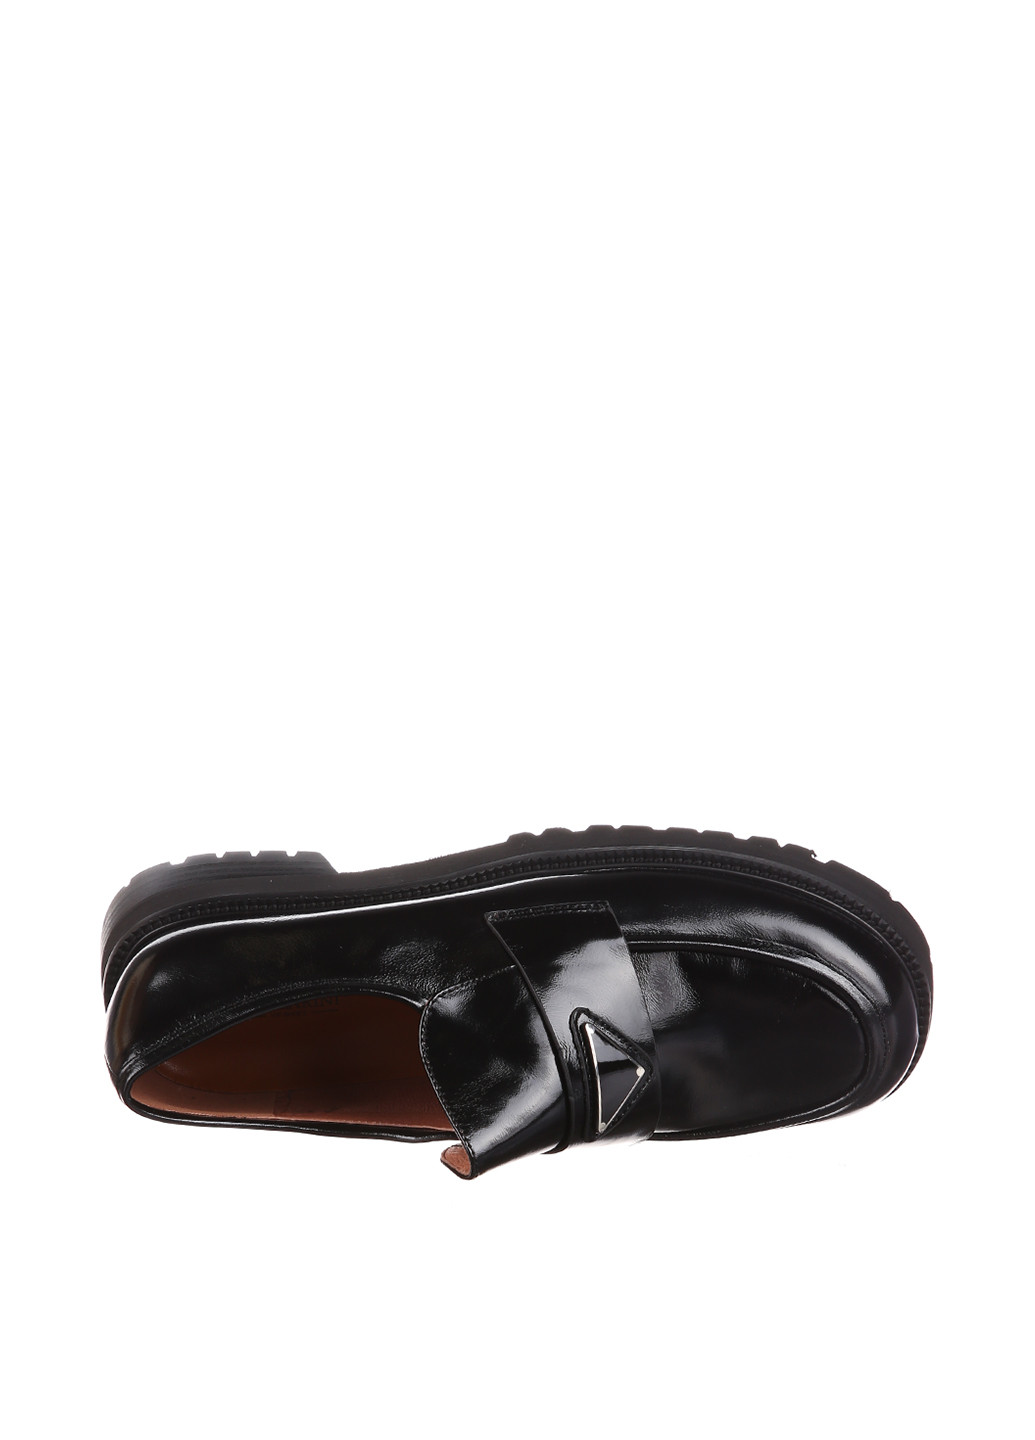 Туфли Blizzarini на низком каблуке лаковые, с аппликацией